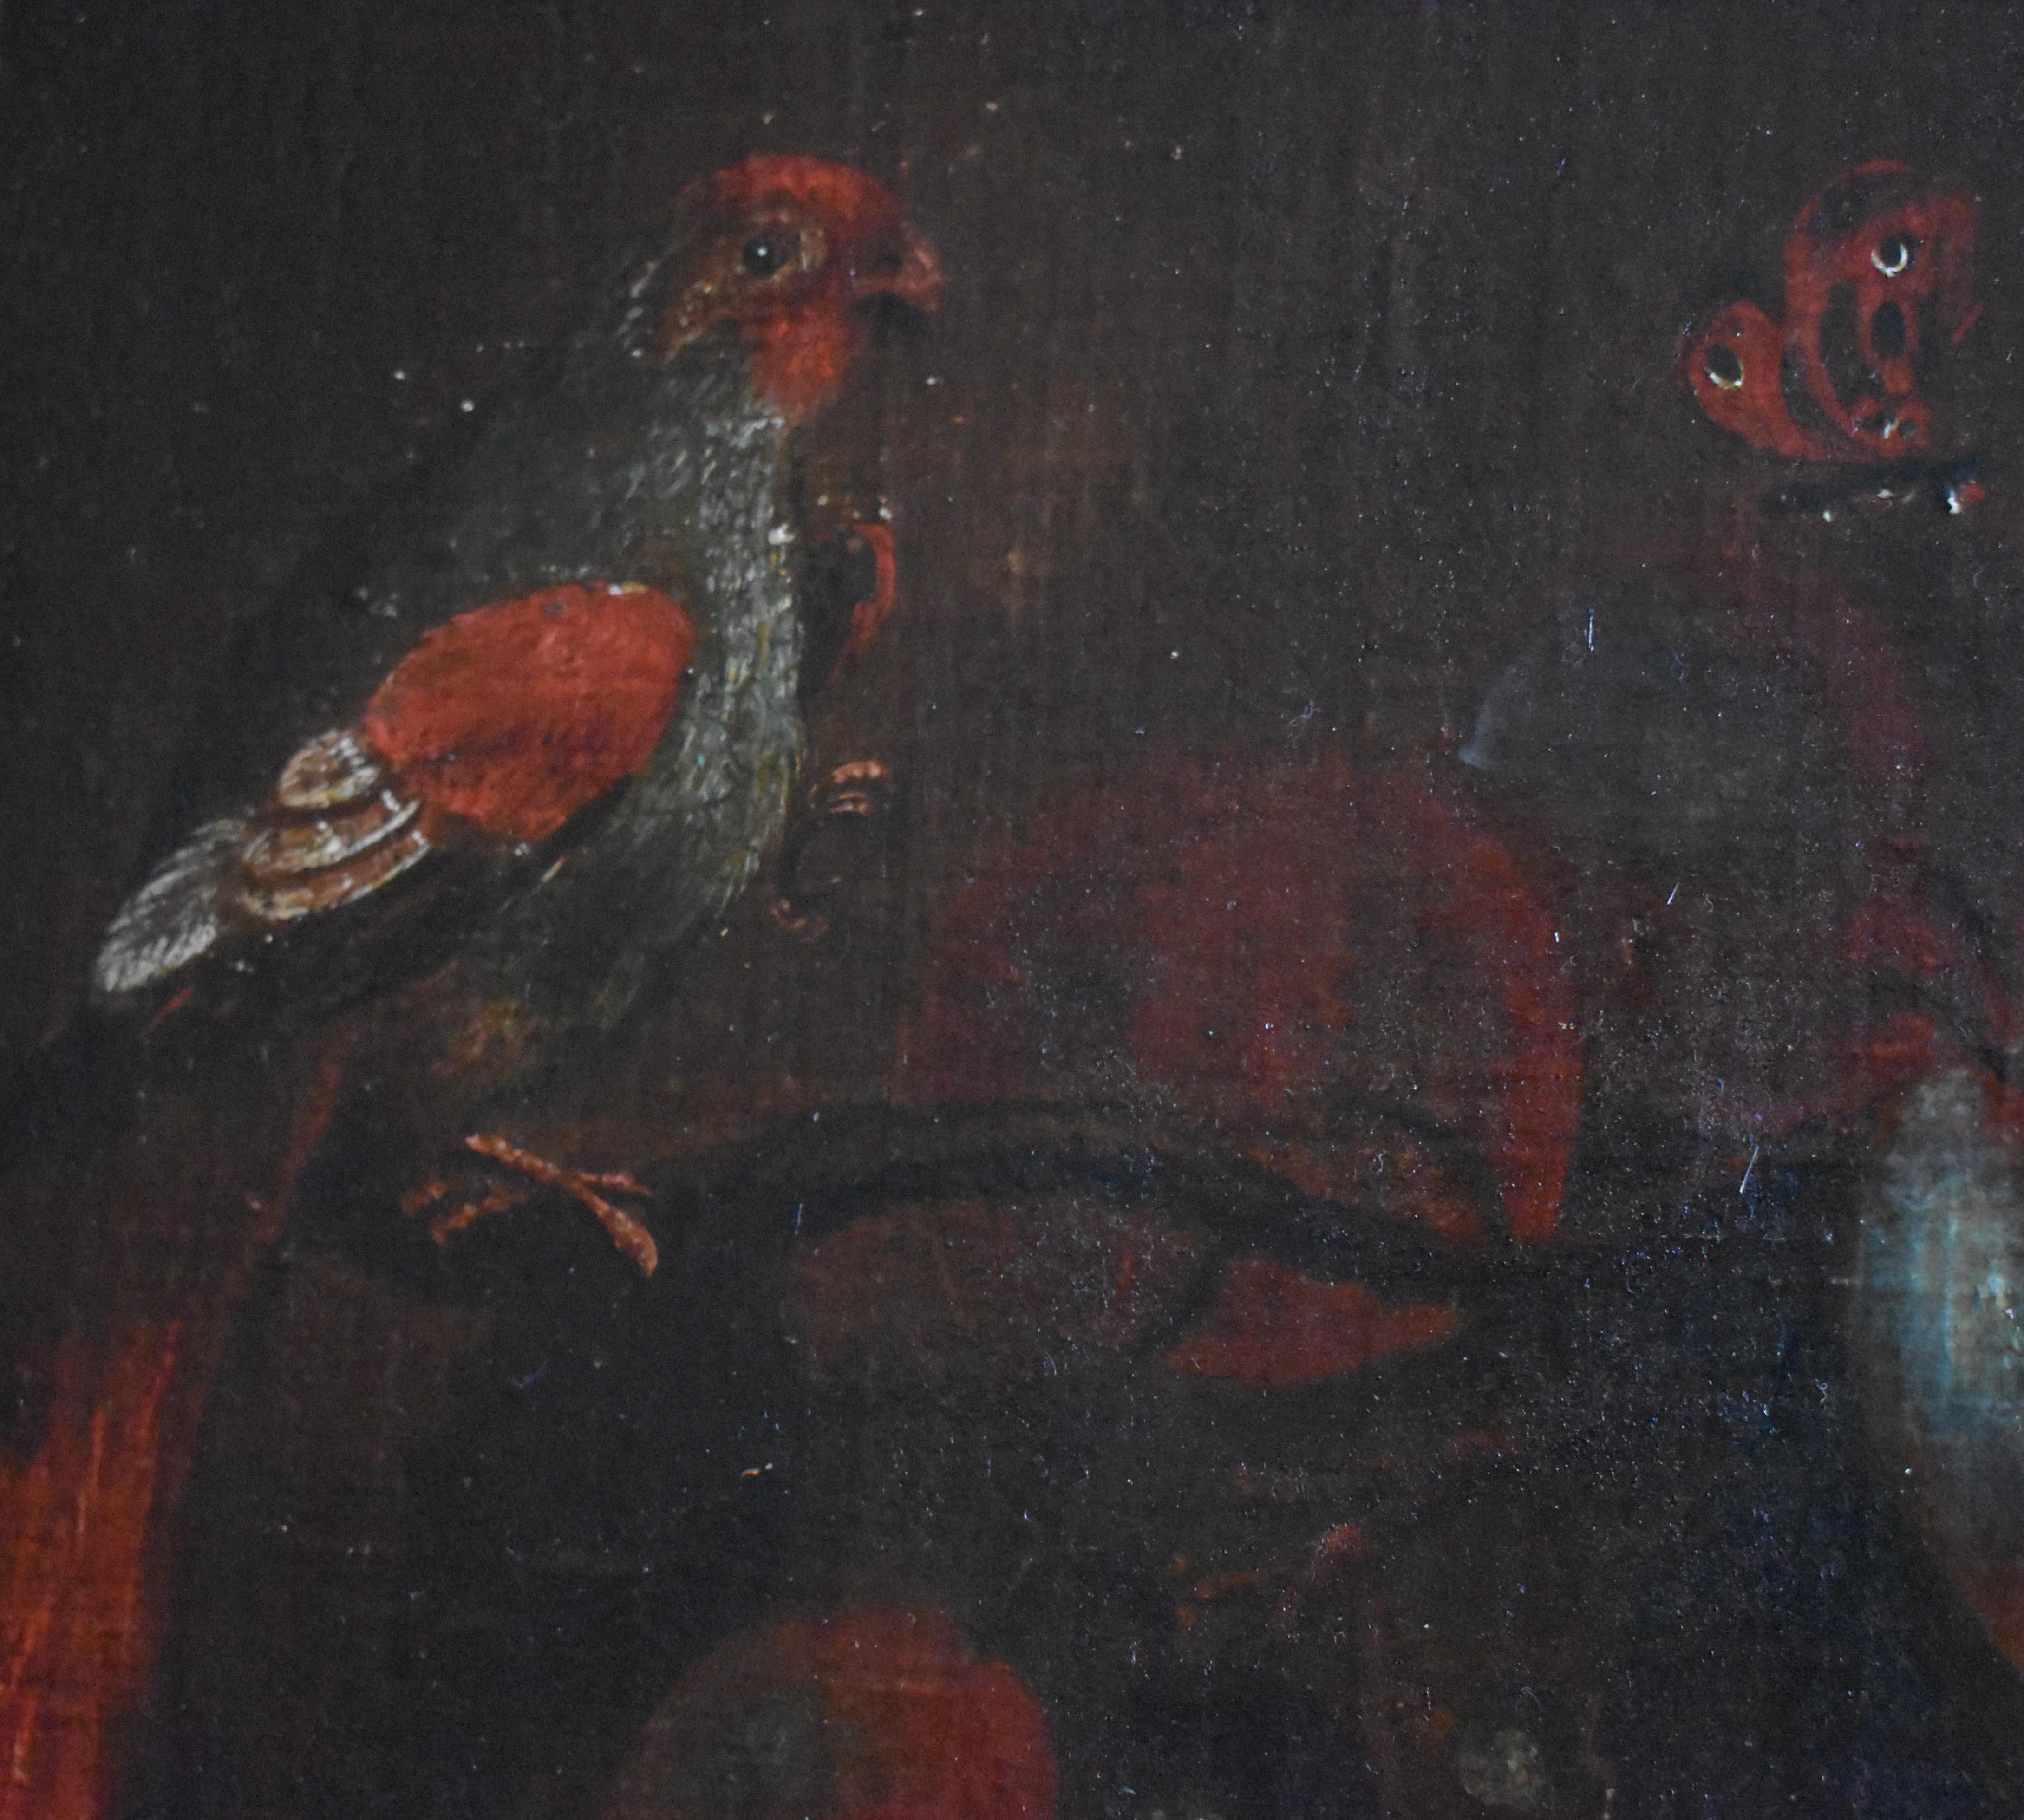 Seguidor de Adriaen Coorte (1665-1707) Bodegón del siglo XVIII c1795

Un suntuoso bodegón que representa melocotones, uvas, ciruelas, aves exóticas y mariposas al estilo de  Adriaen Coorte. Está pintada al óleo sobre papel y luego pegada a un panel